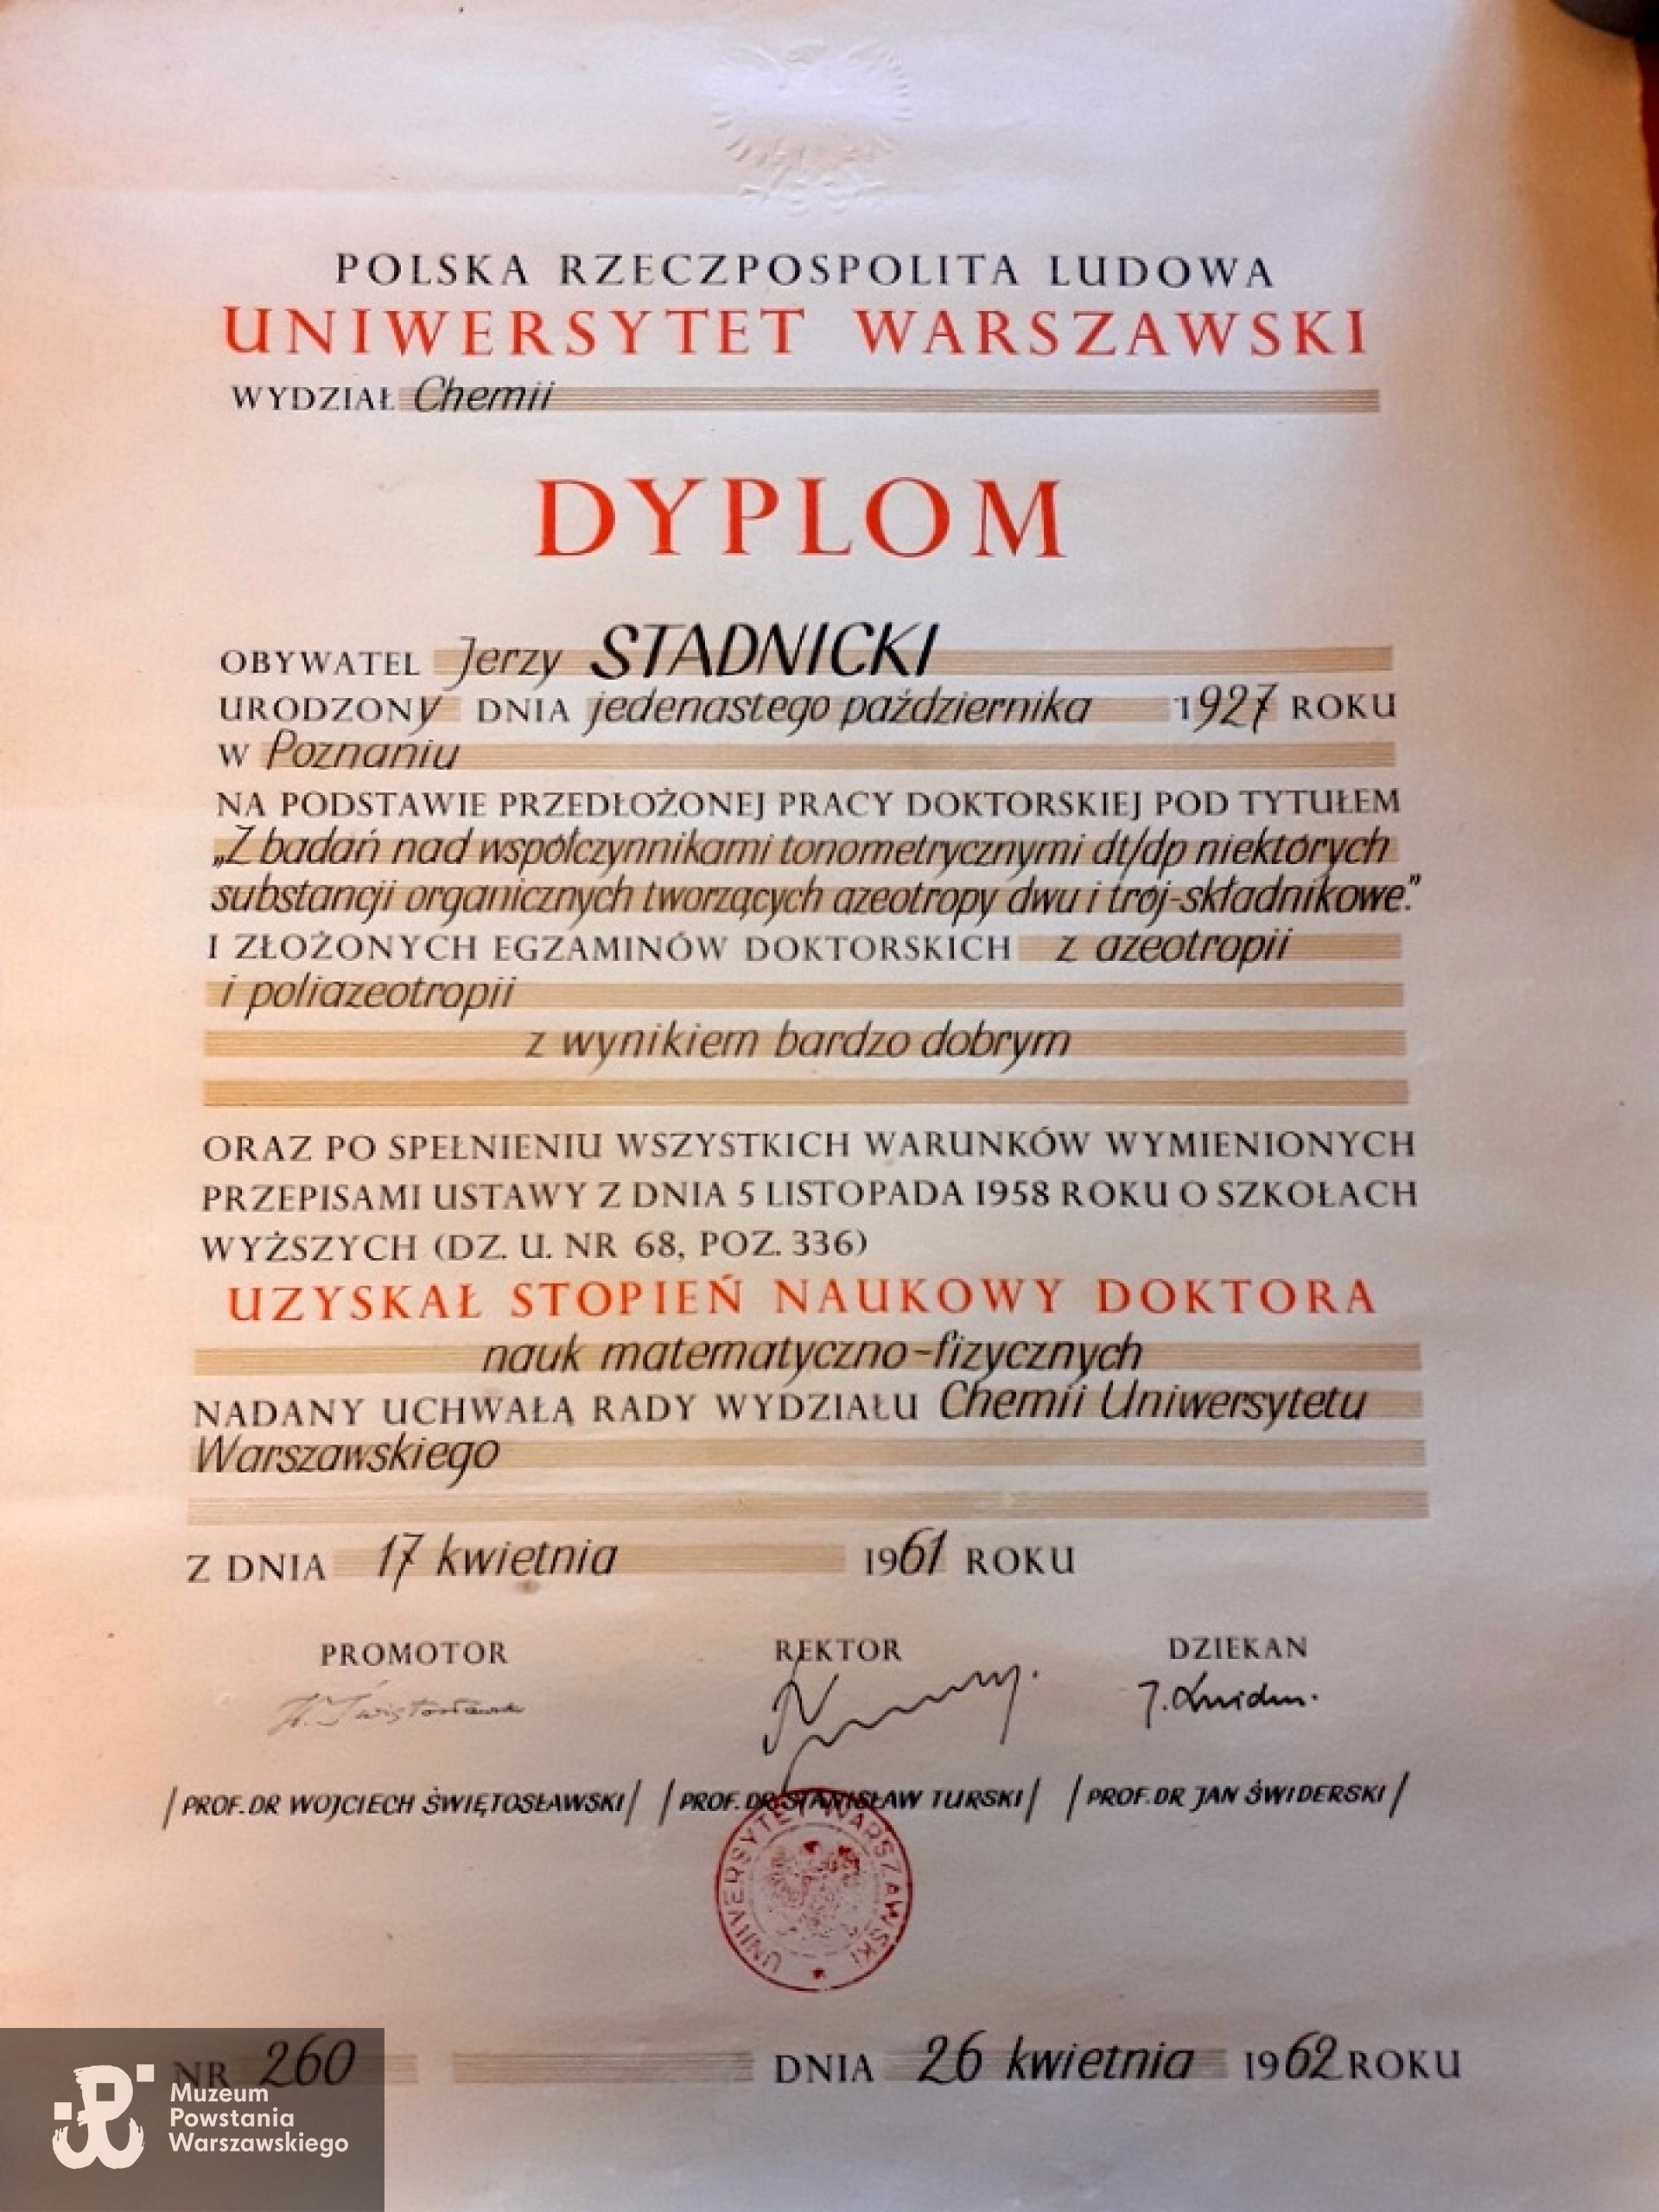 17.04.1961 roku uchwałą Rady Wydziału Chemii Uniwersytetu Warszawskiego uzyskał stopień naukowy doktora nauk matematyczno-fizycznych.